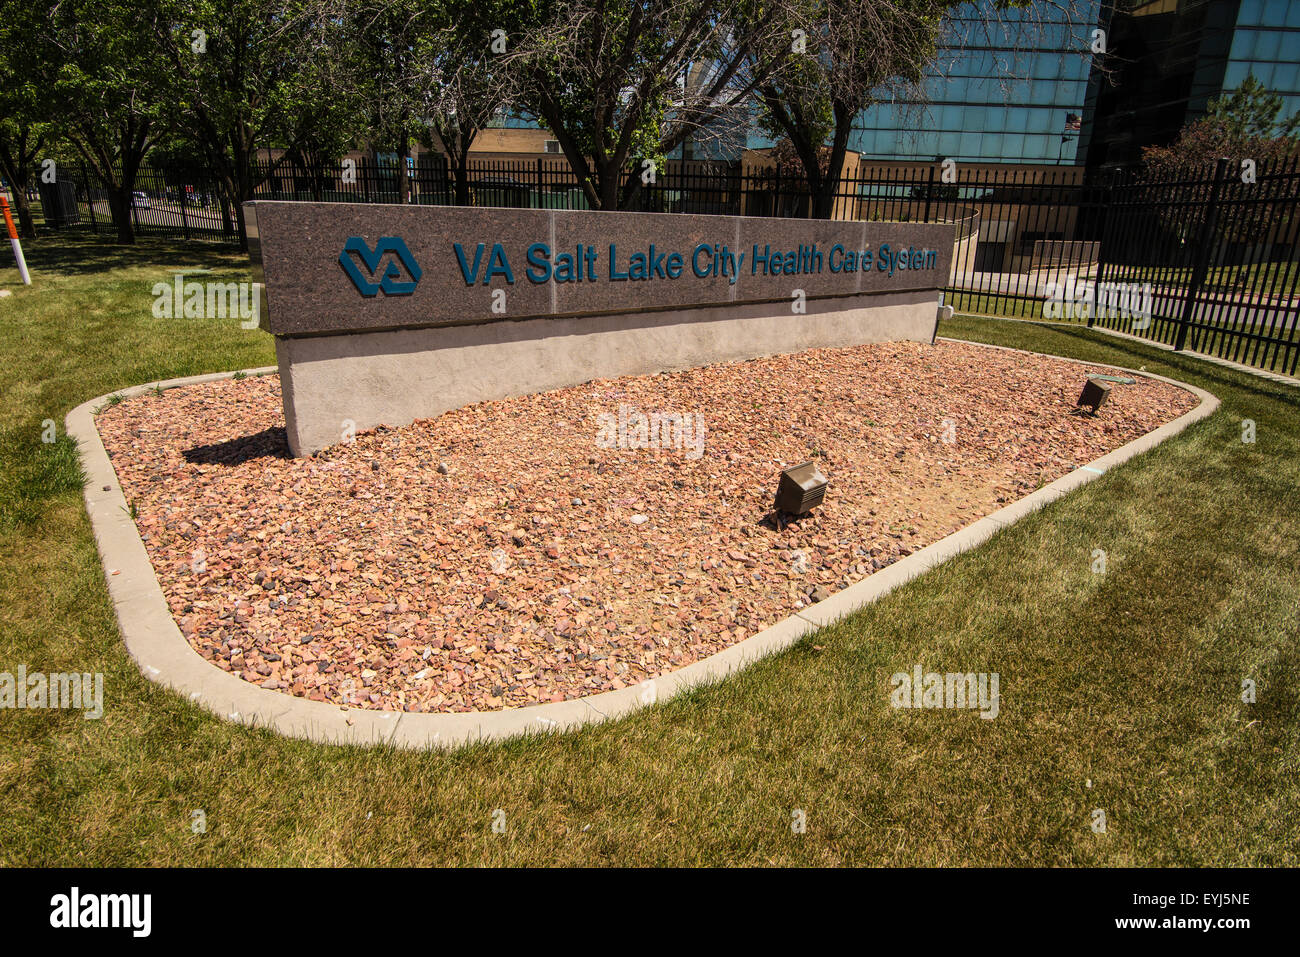 VA (Veterans Administration) Medical Center - Salt Lake City - Utah Stock Photo